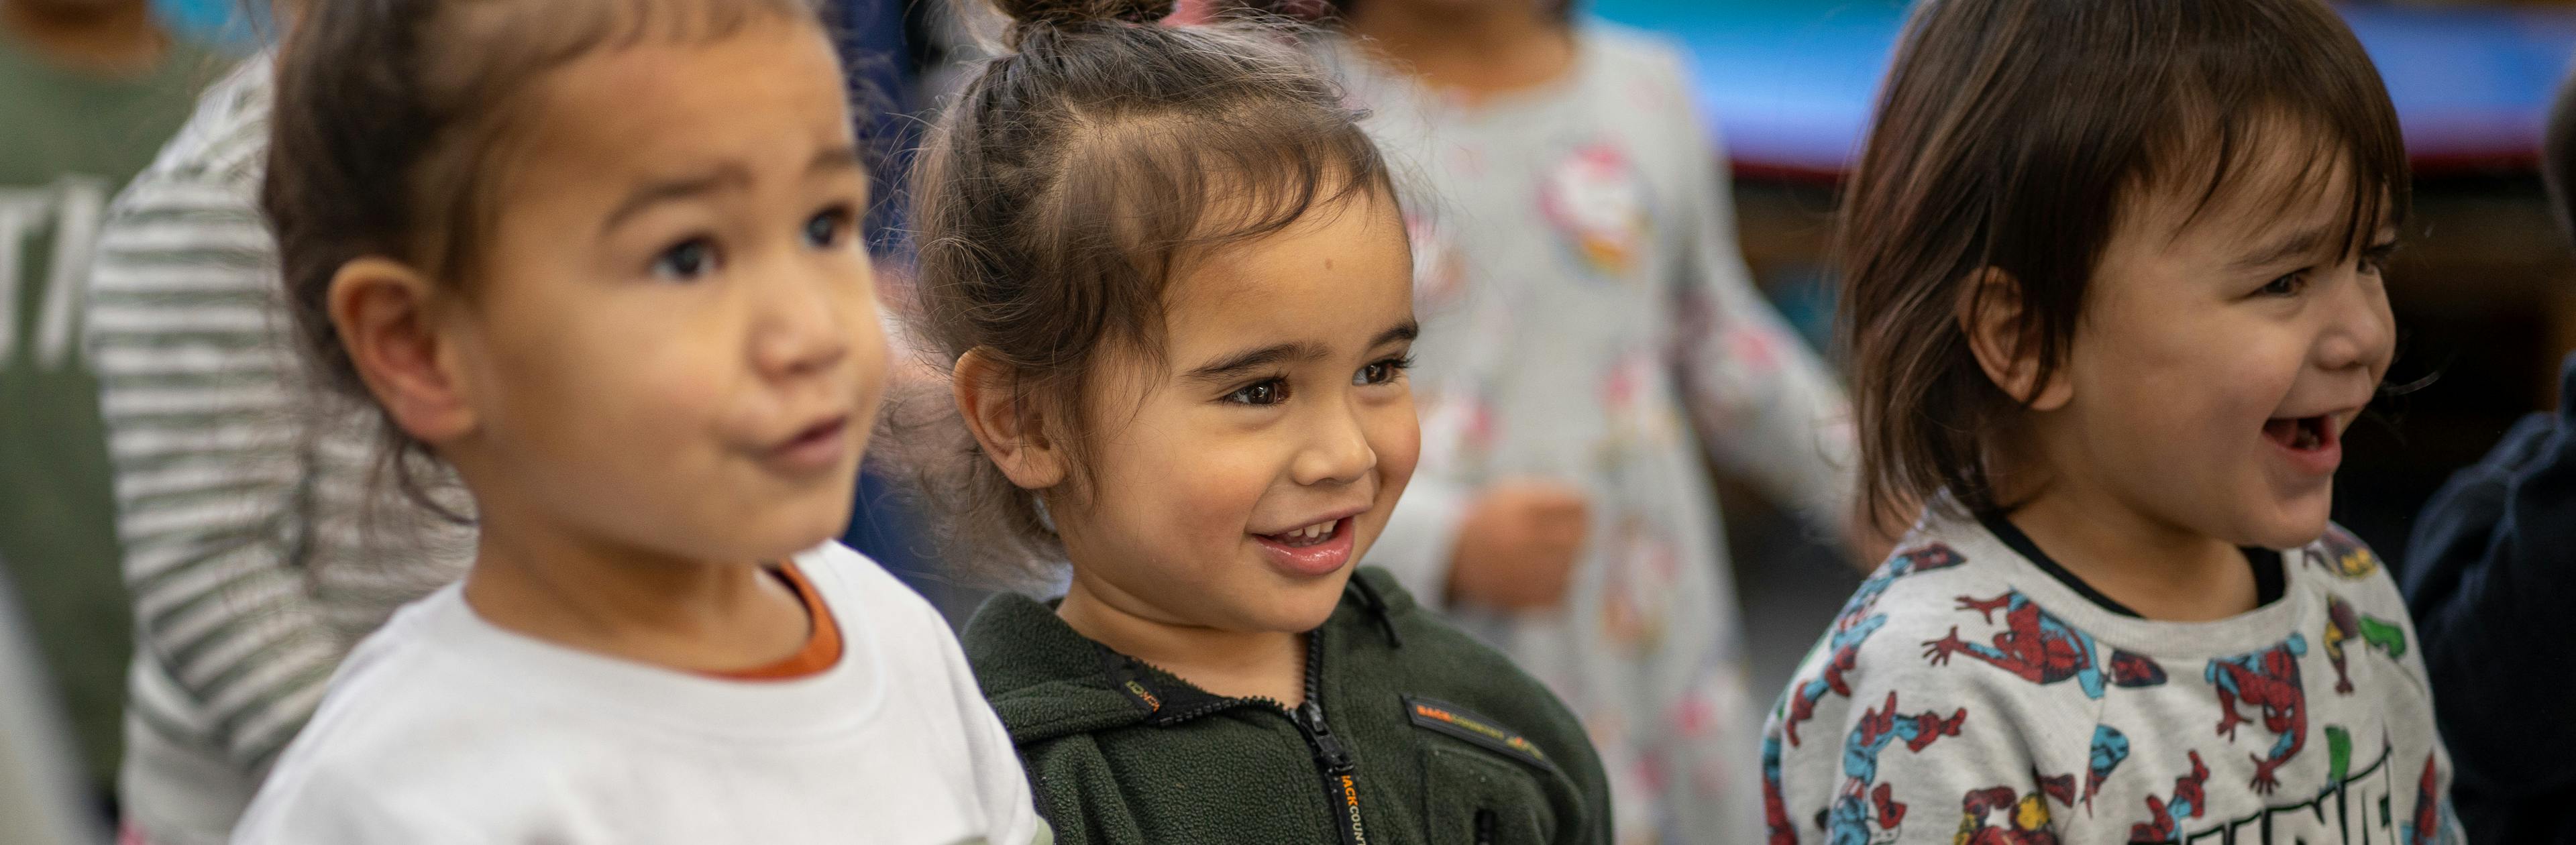 Resource Hub for tamariki and rangatahi in New Zealand - three young smiling children